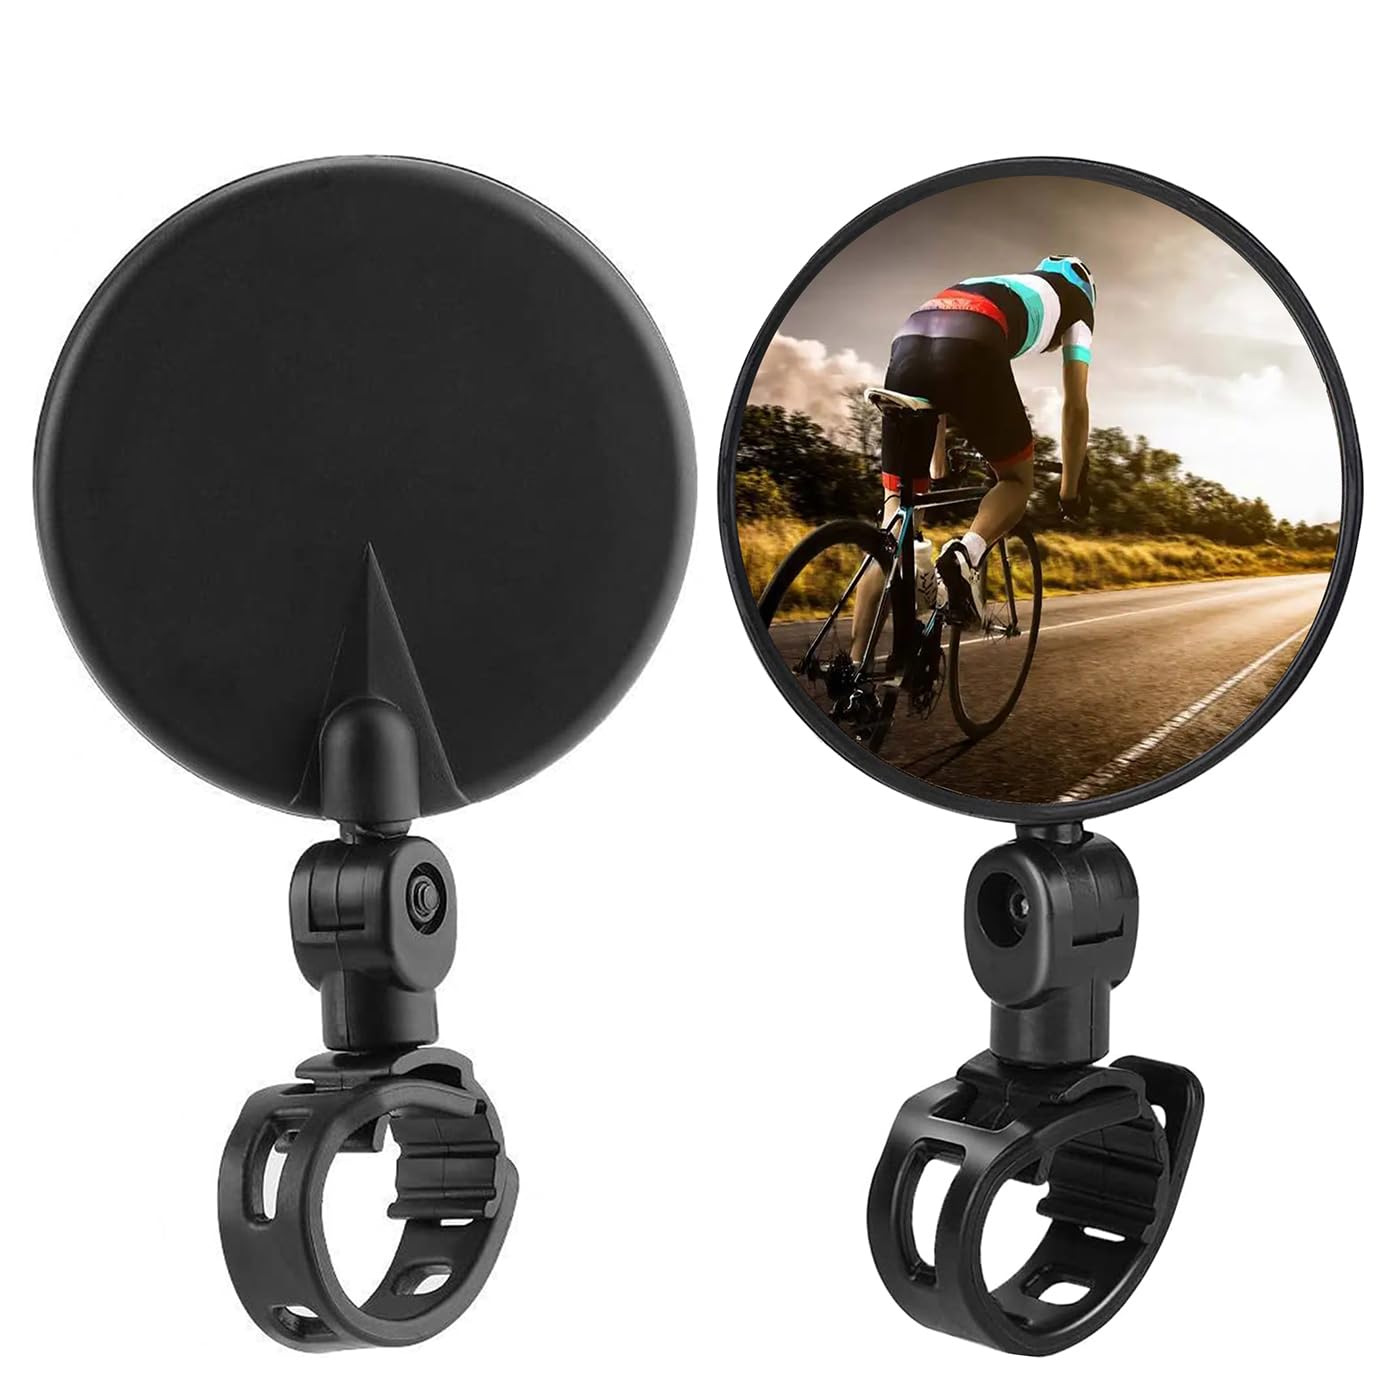 Fahrradspiegel, 2 Stück Rückspiegel, HD 360 Grad drehbar Fahrradspiegel für e-bike, Passend für 15–35 mm Lenker, klappbar Fahrradspiegel für Fahrrad, Mountainbike, Rennrad, E-bike, Motorrad von UBRAVE